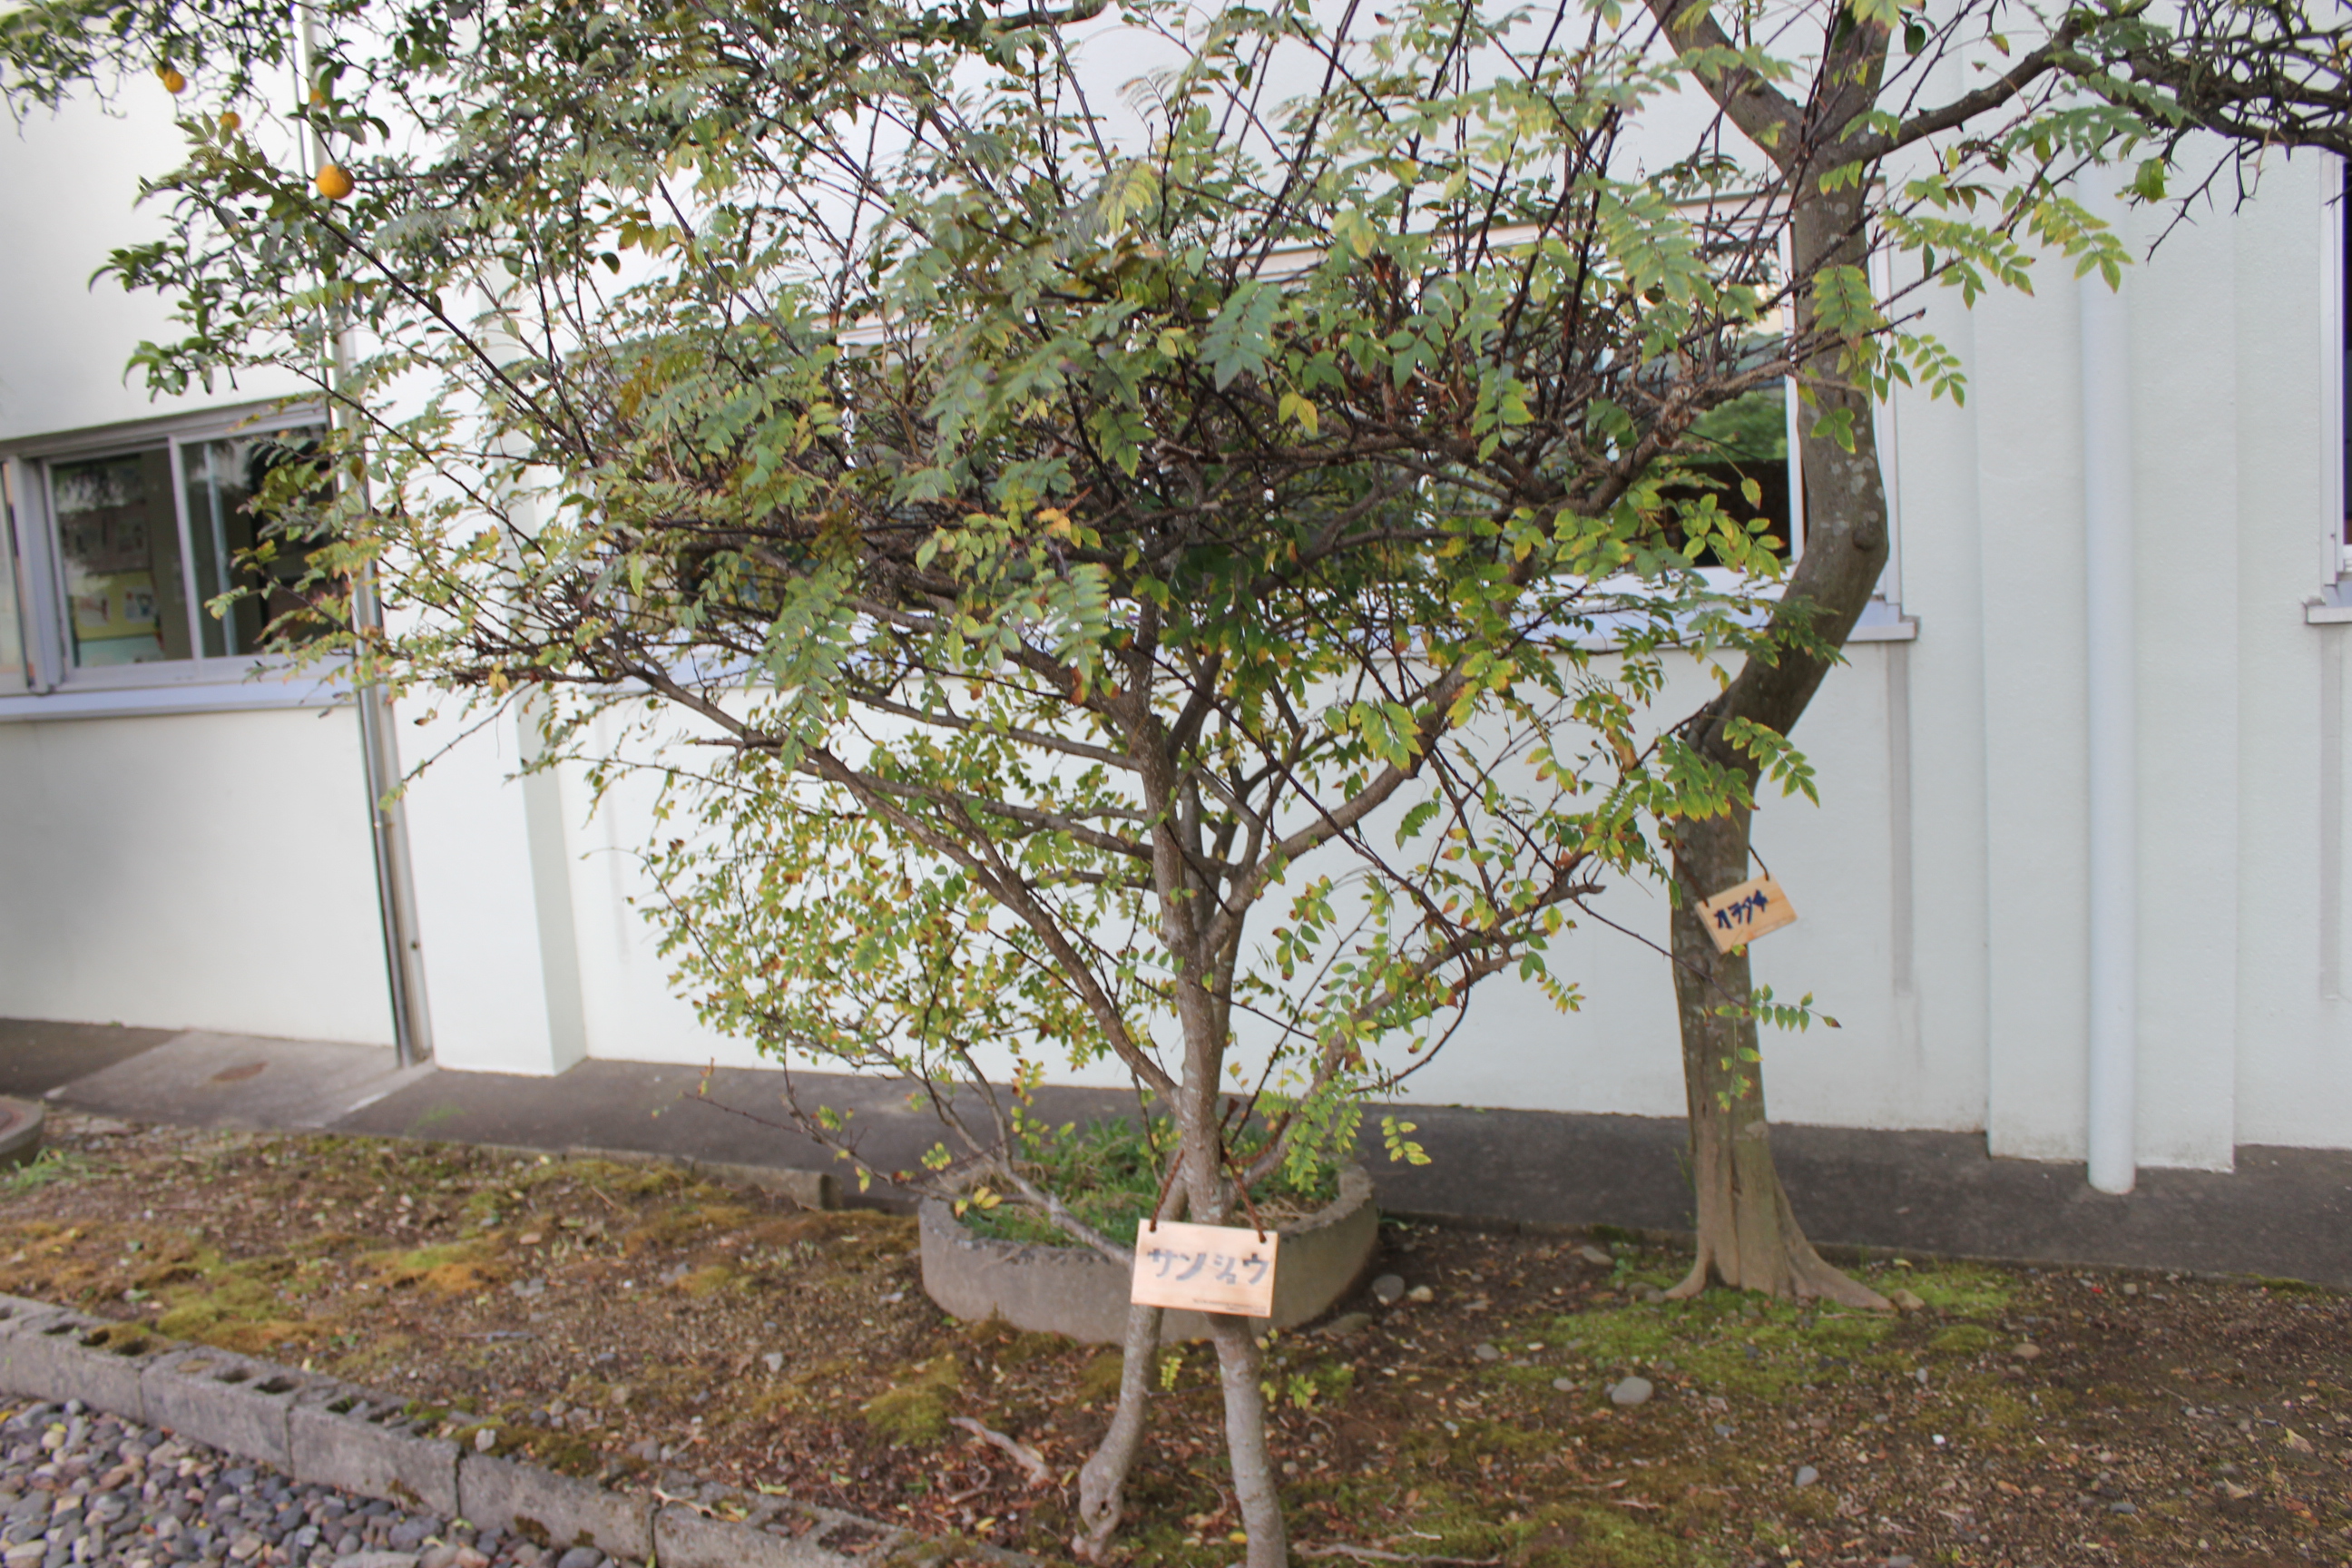 山形県 庄内町立余目第三小学校にて、「学校の木のしおり」と樹木名